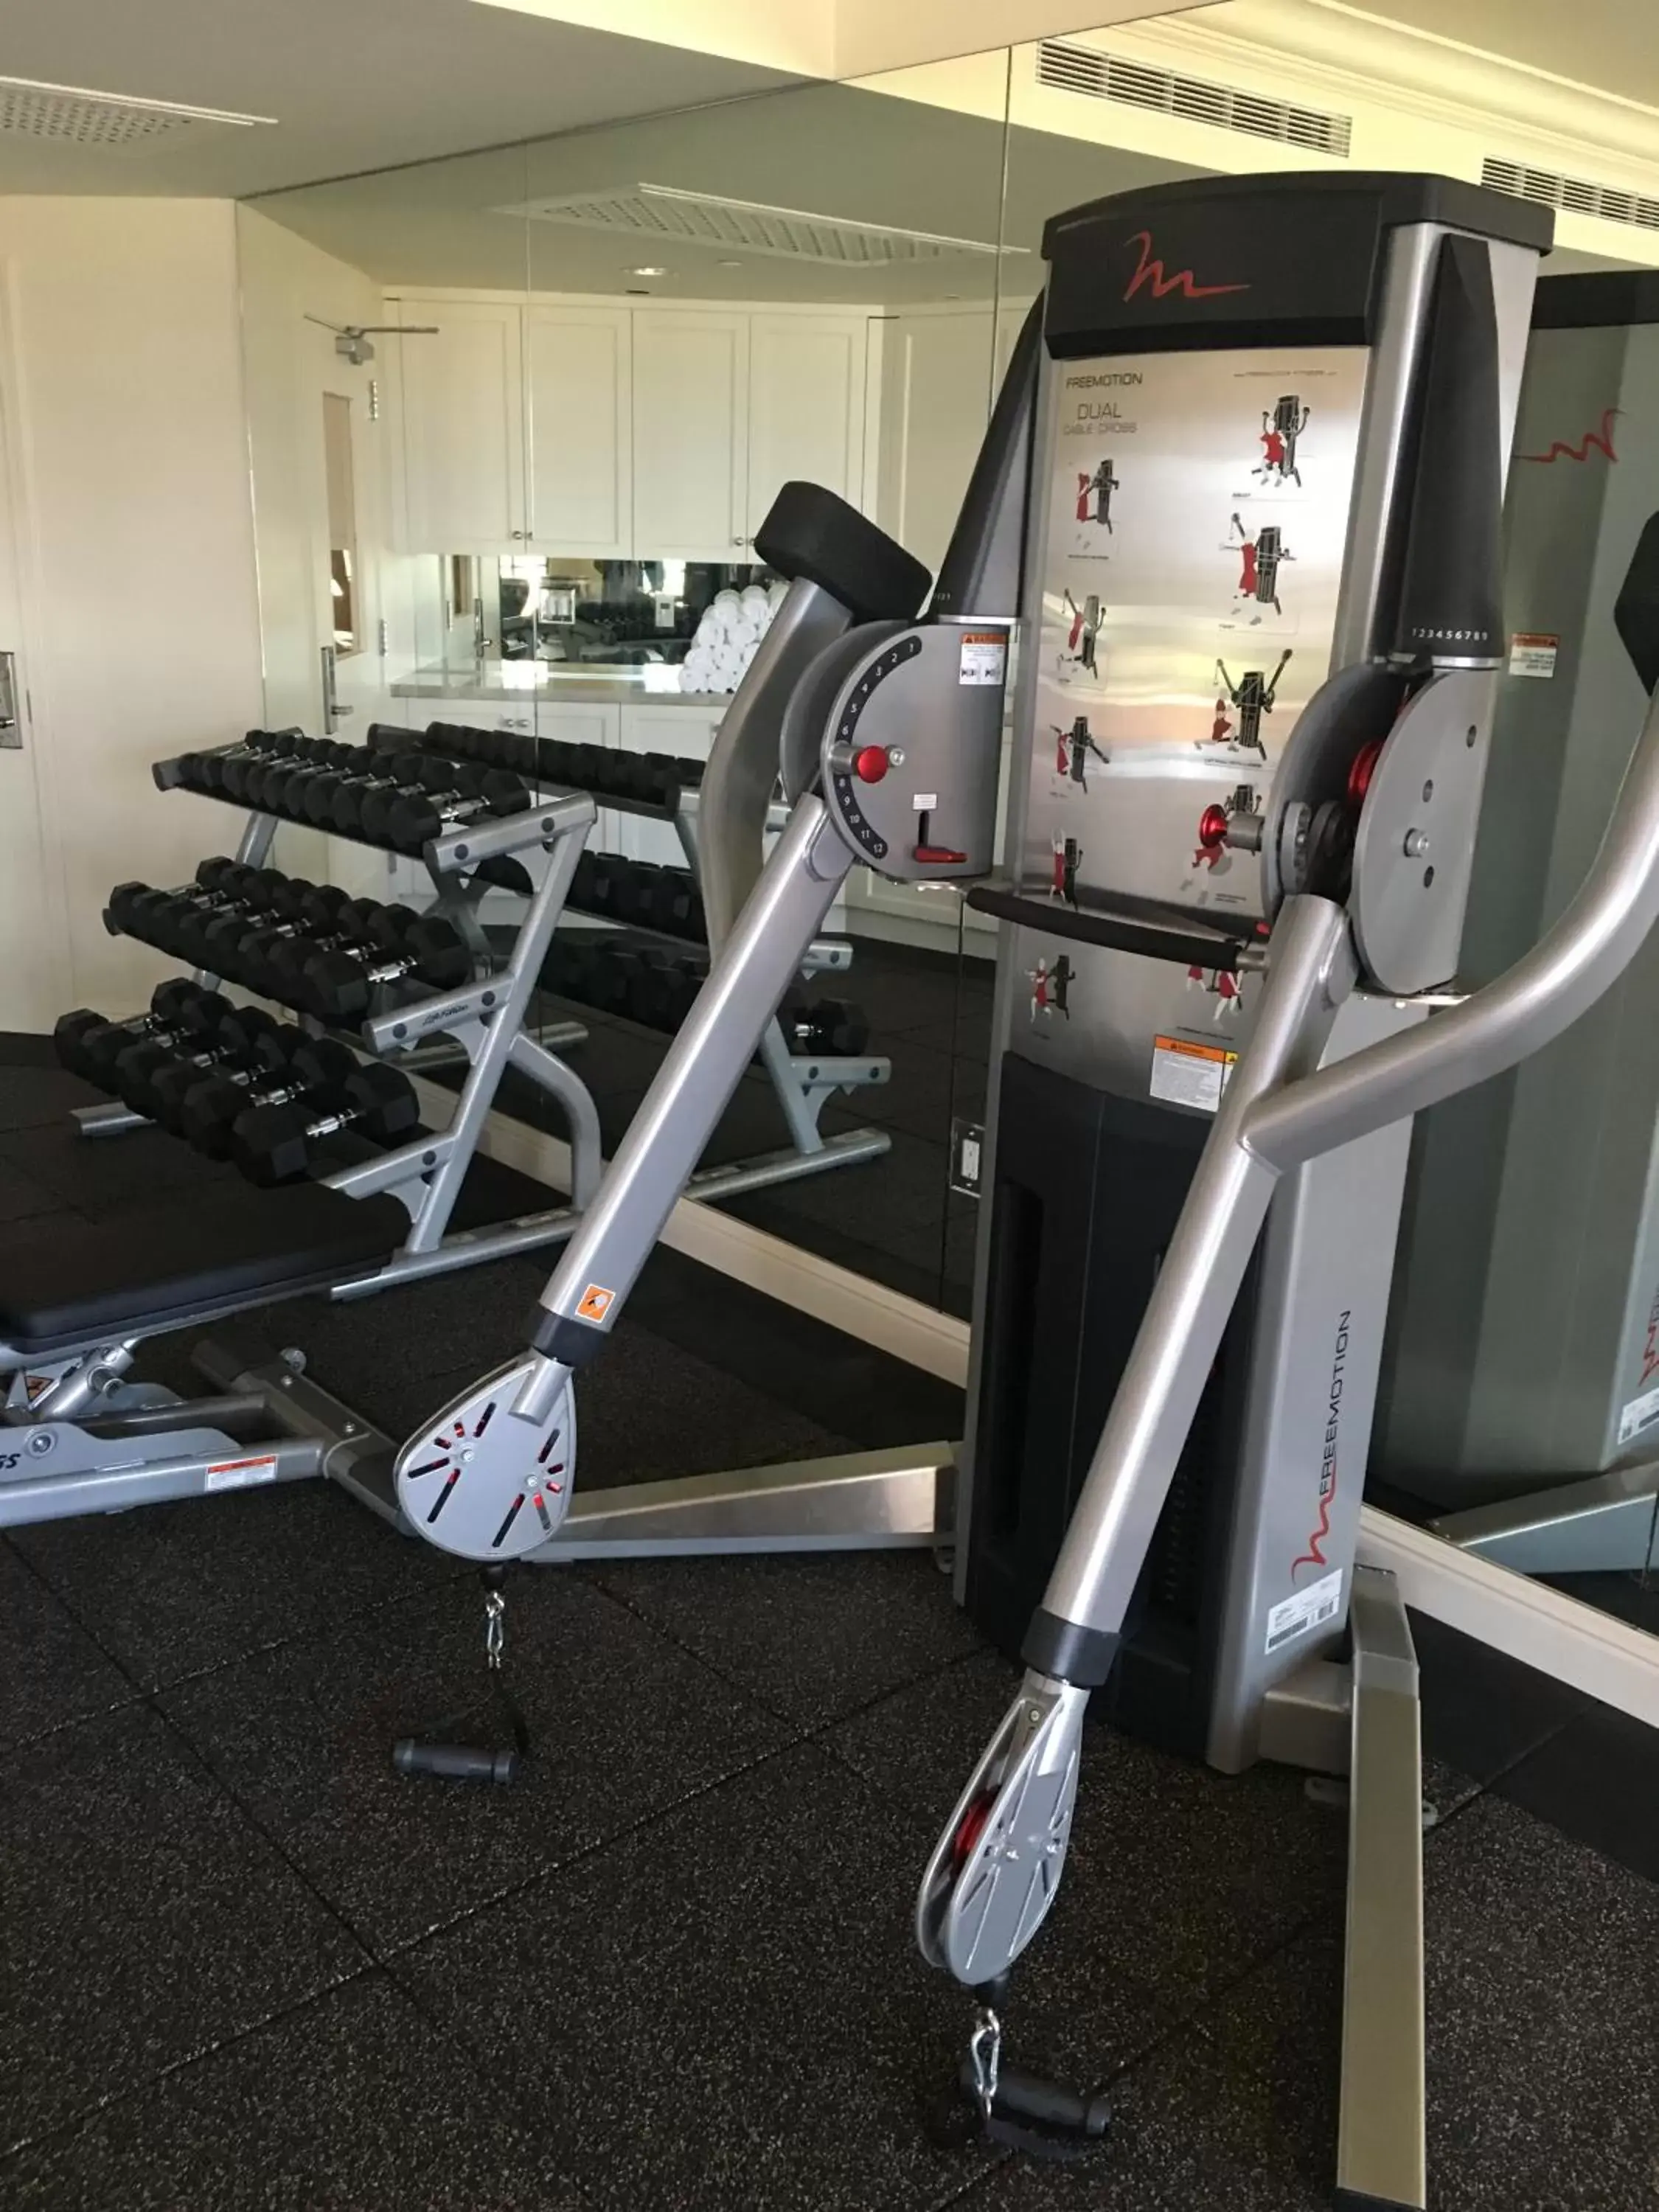 Fitness centre/facilities, Fitness Center/Facilities in Santa Barbara Inn